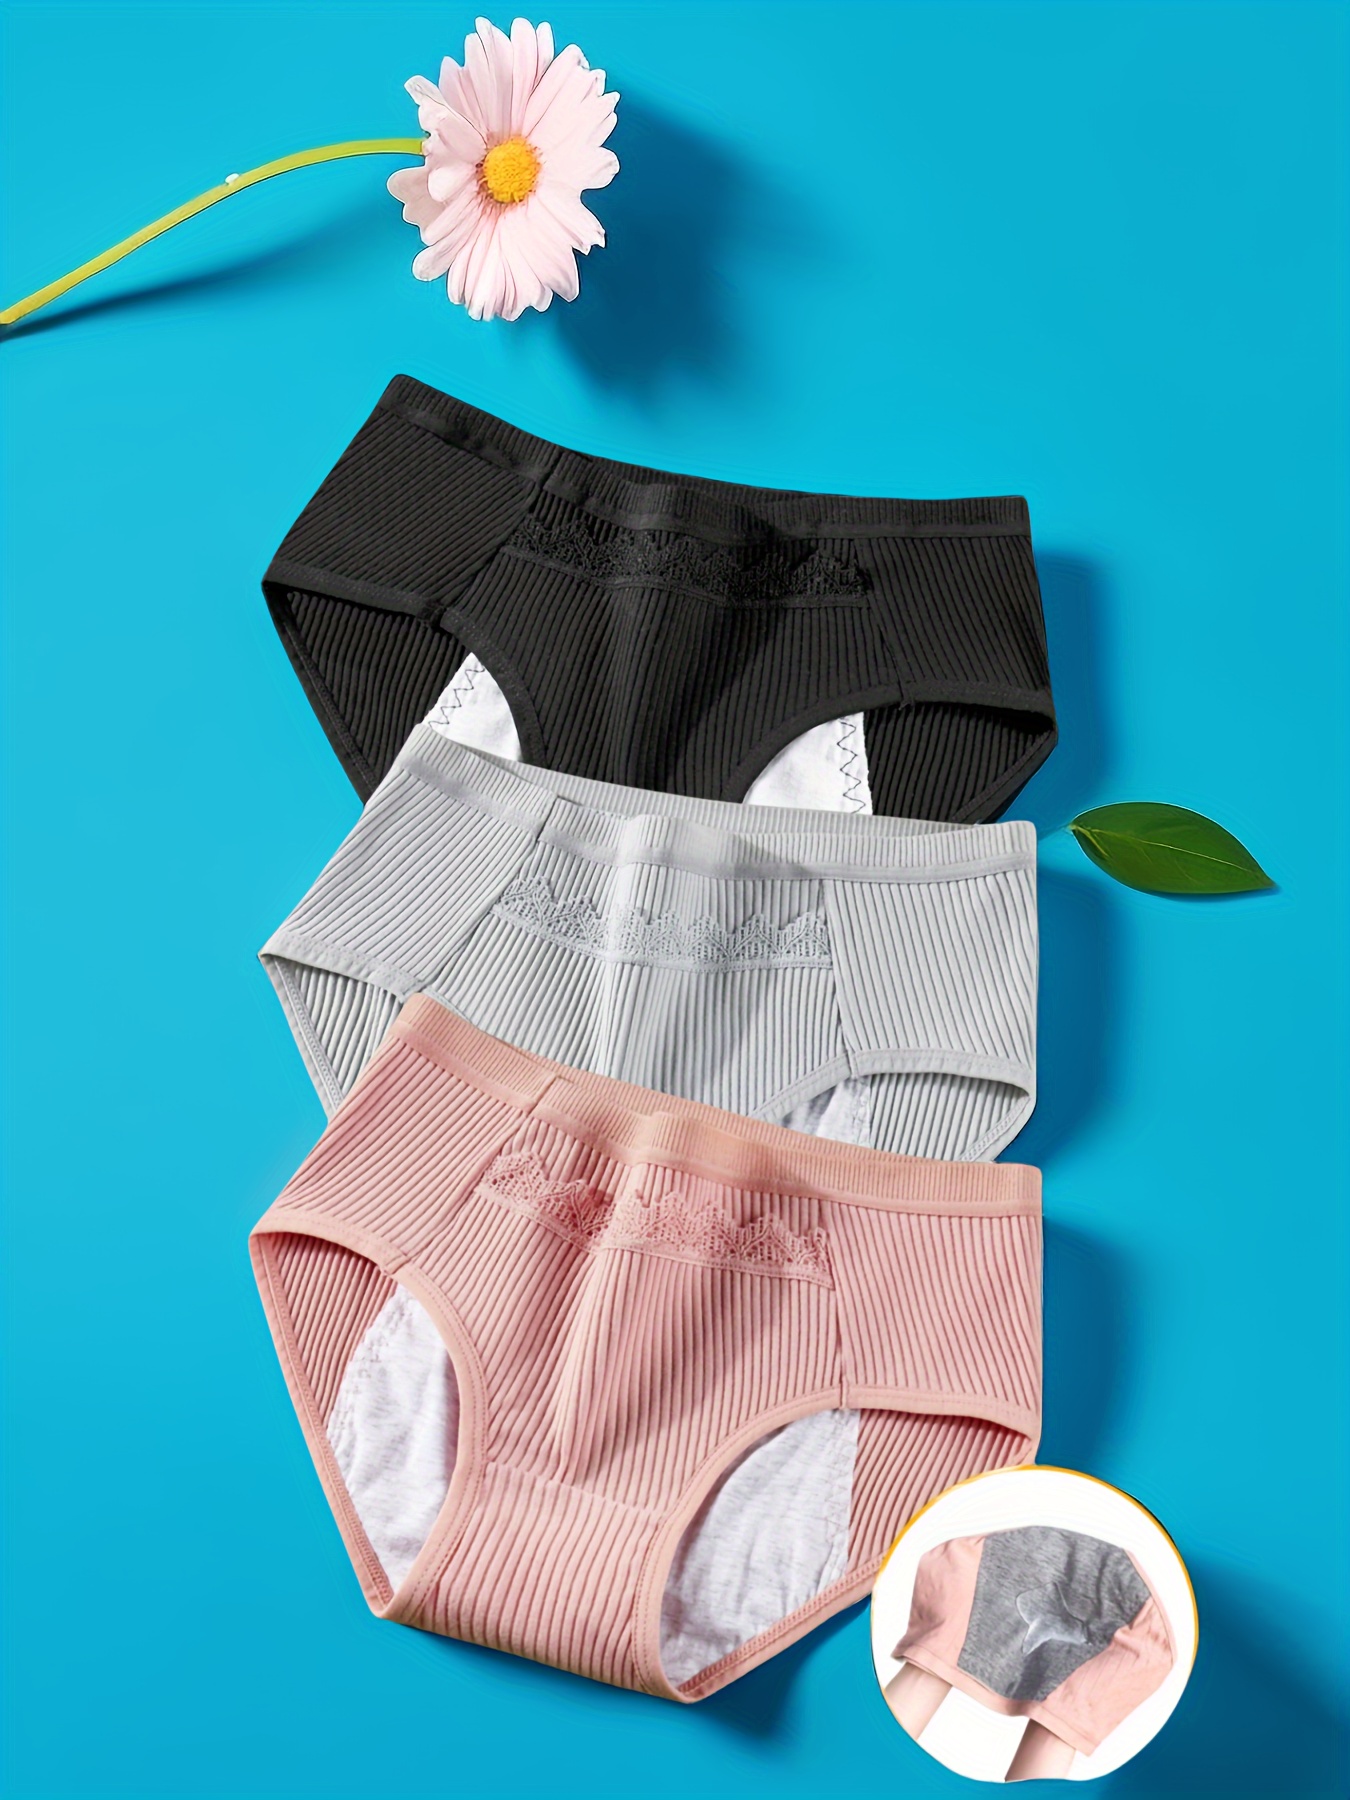 Leakproof Women's Period Panties 4 layer Leakproof High Flow - Temu